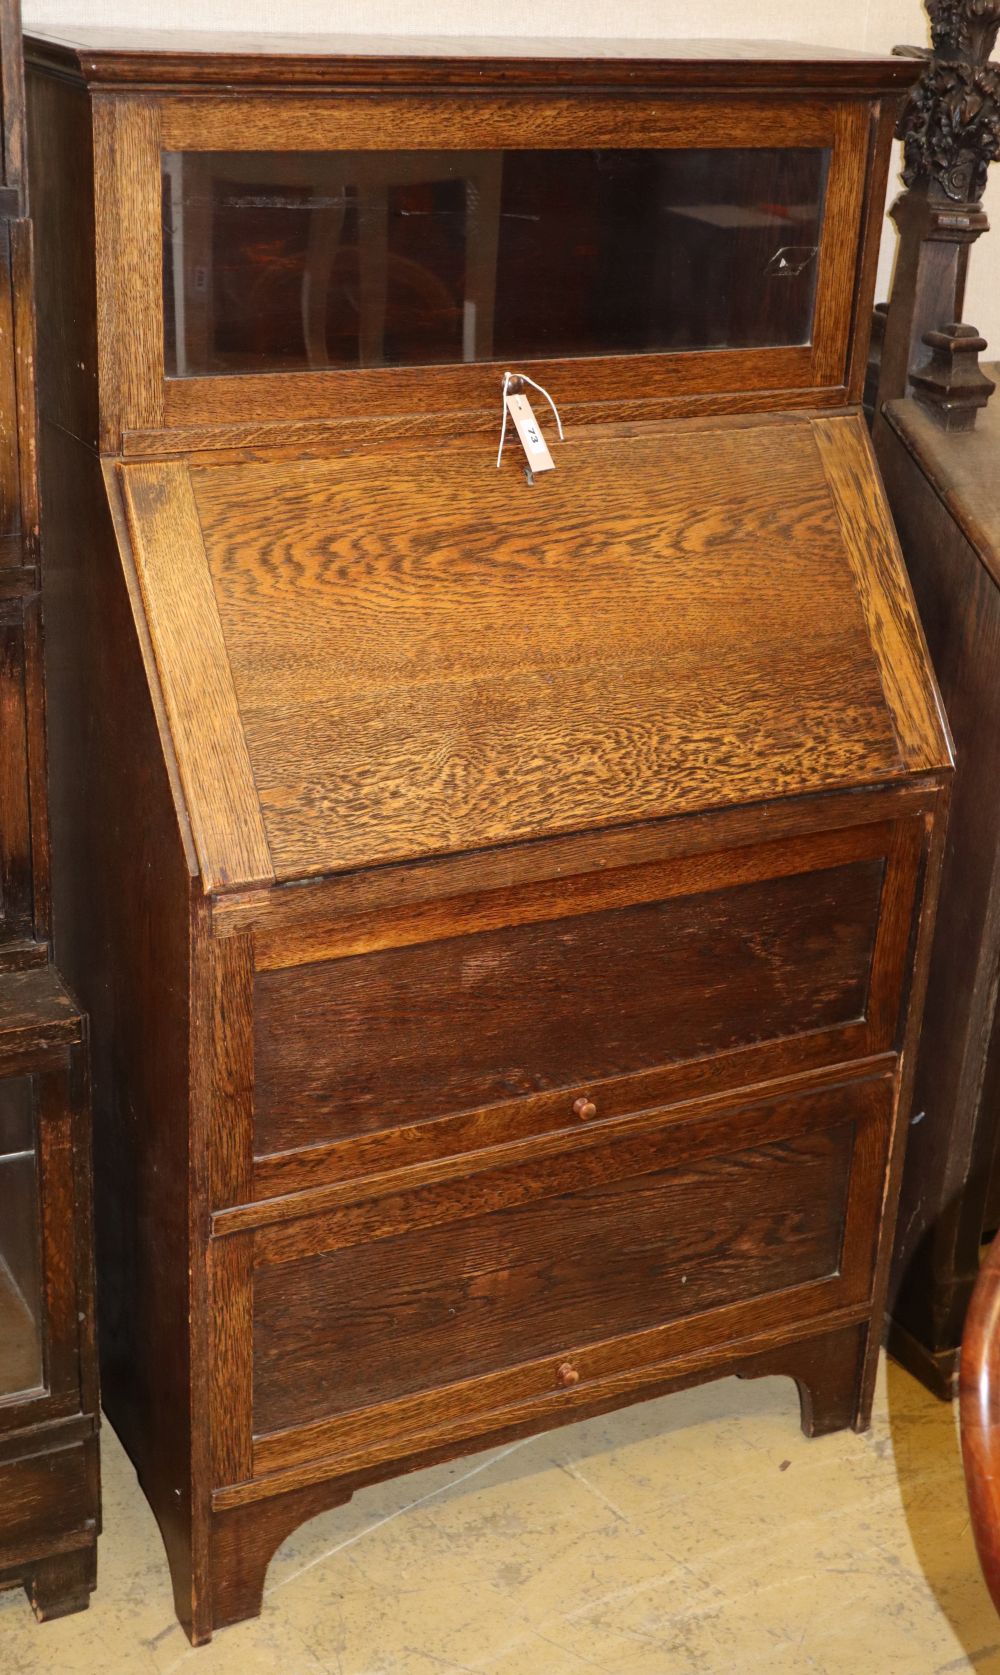 A Globe Wernicke style oak bureau bookcase, W.79cm, D.42cm, H.138cm